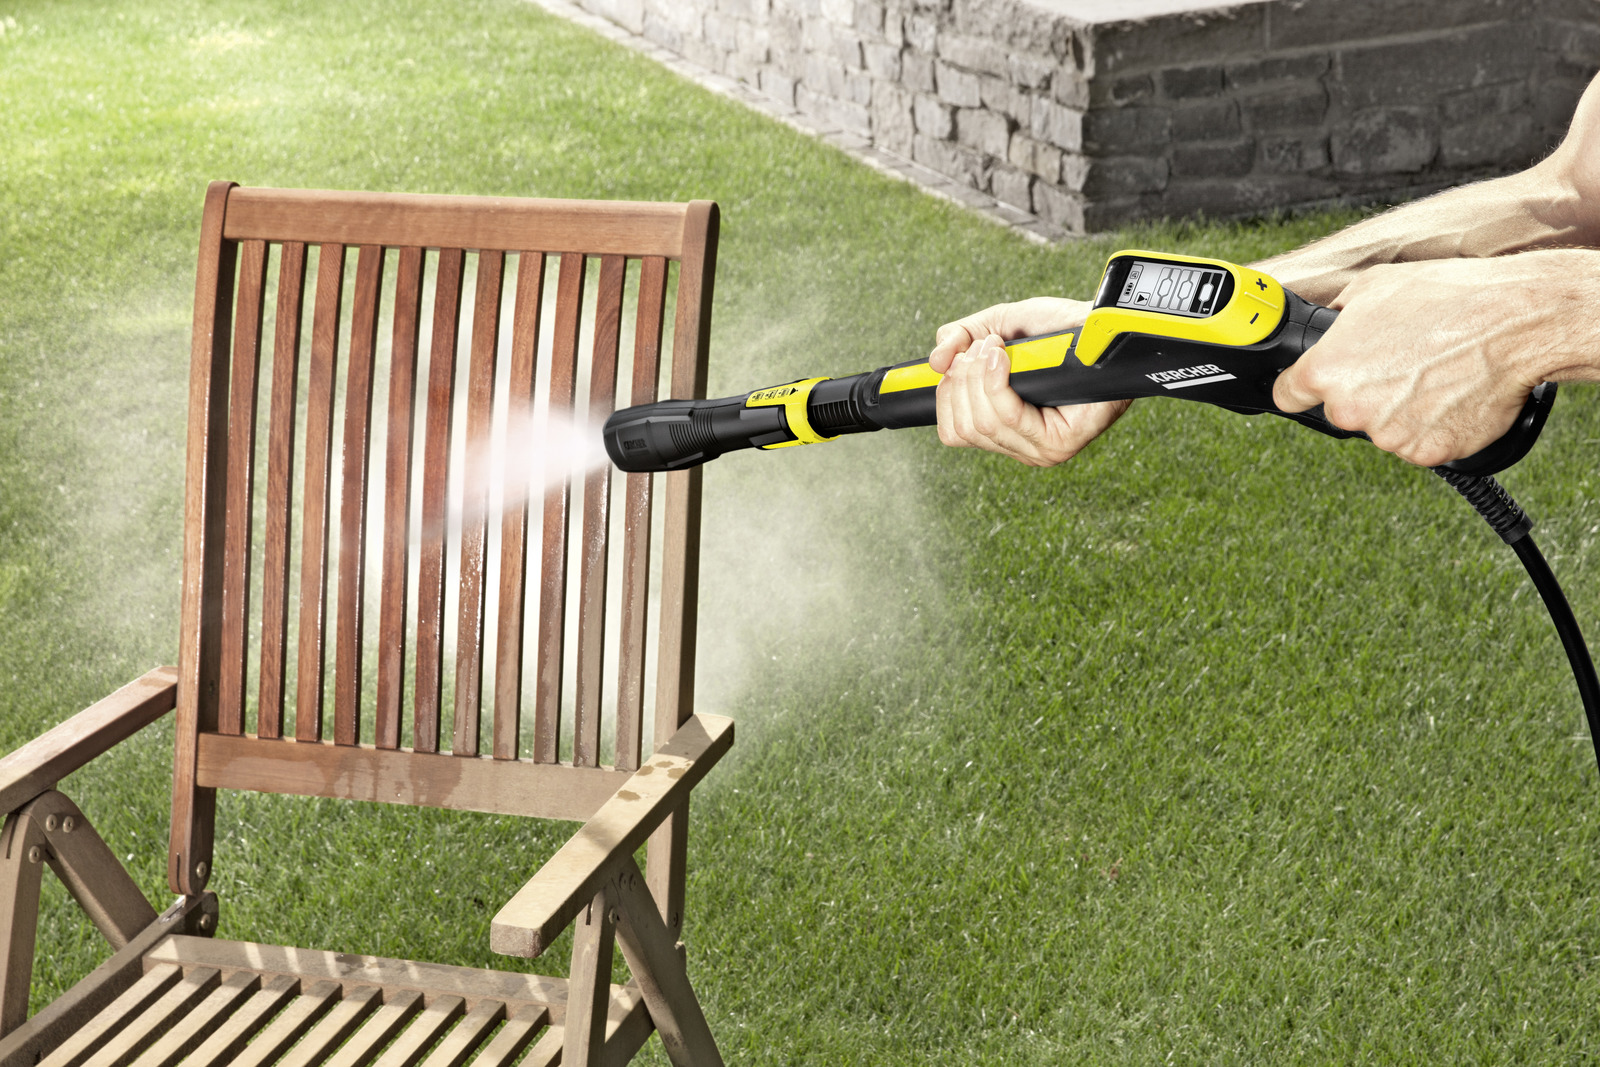 Myjka wysokociśnieniowa Karcher K 7 Premium Smart Control Home - zastosowanie w ogrodzie